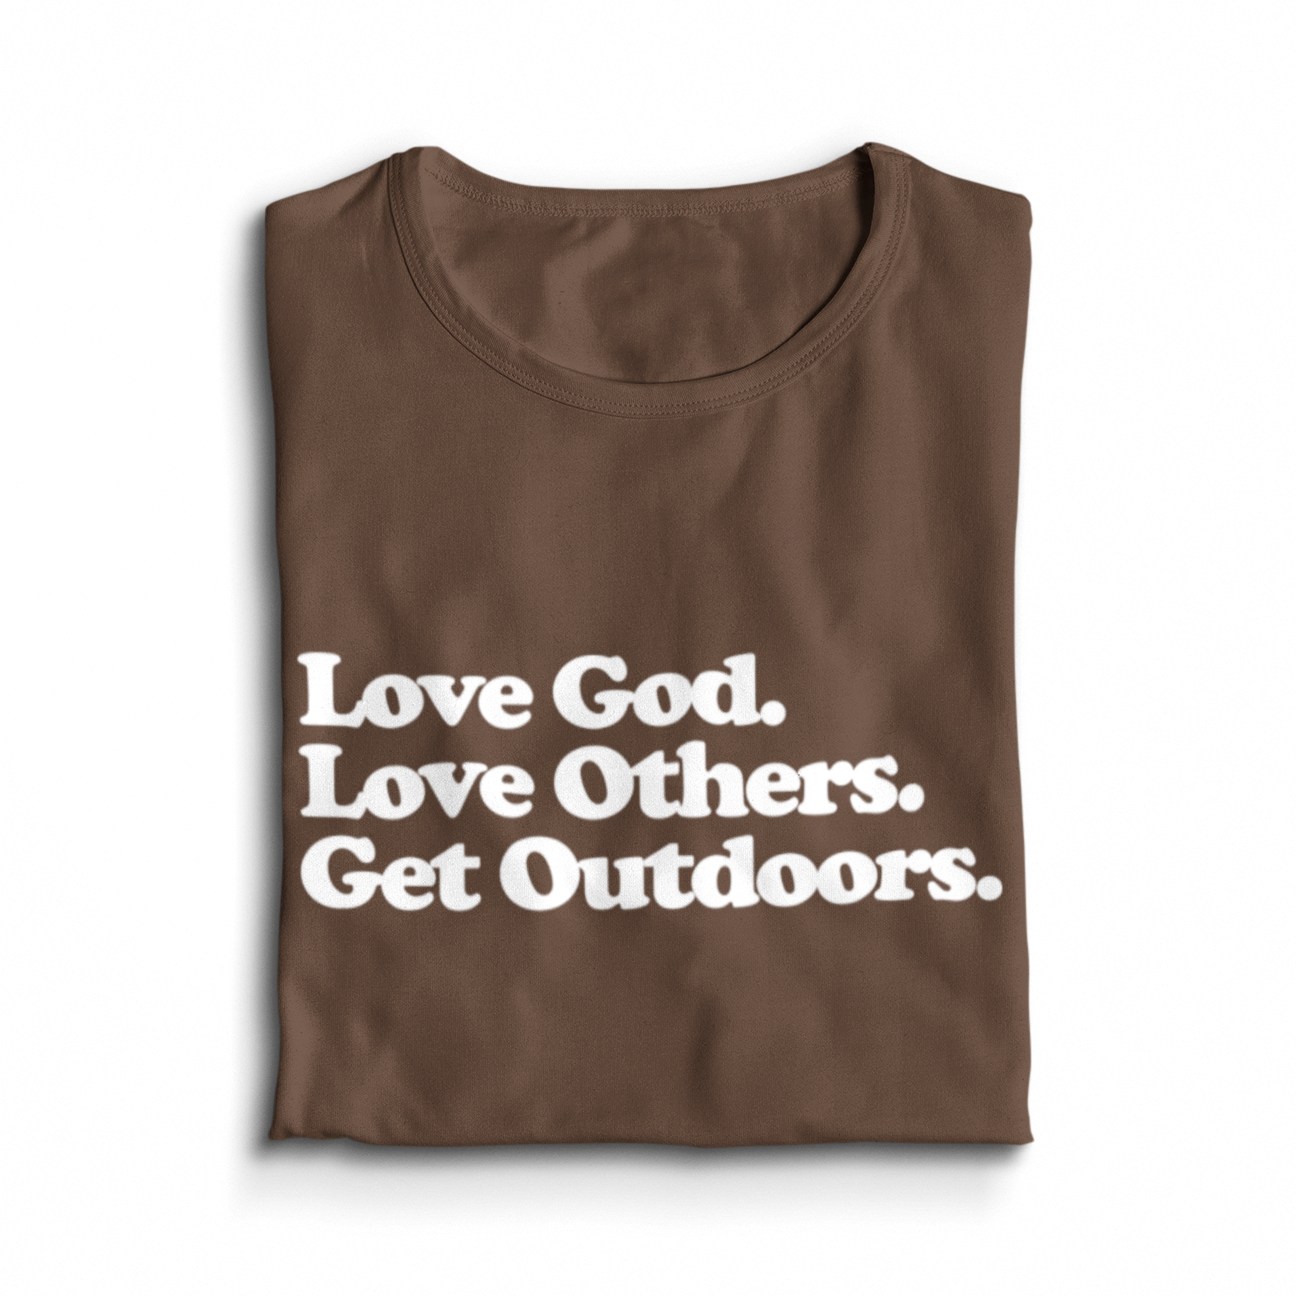 Get Outdoors T-shirt